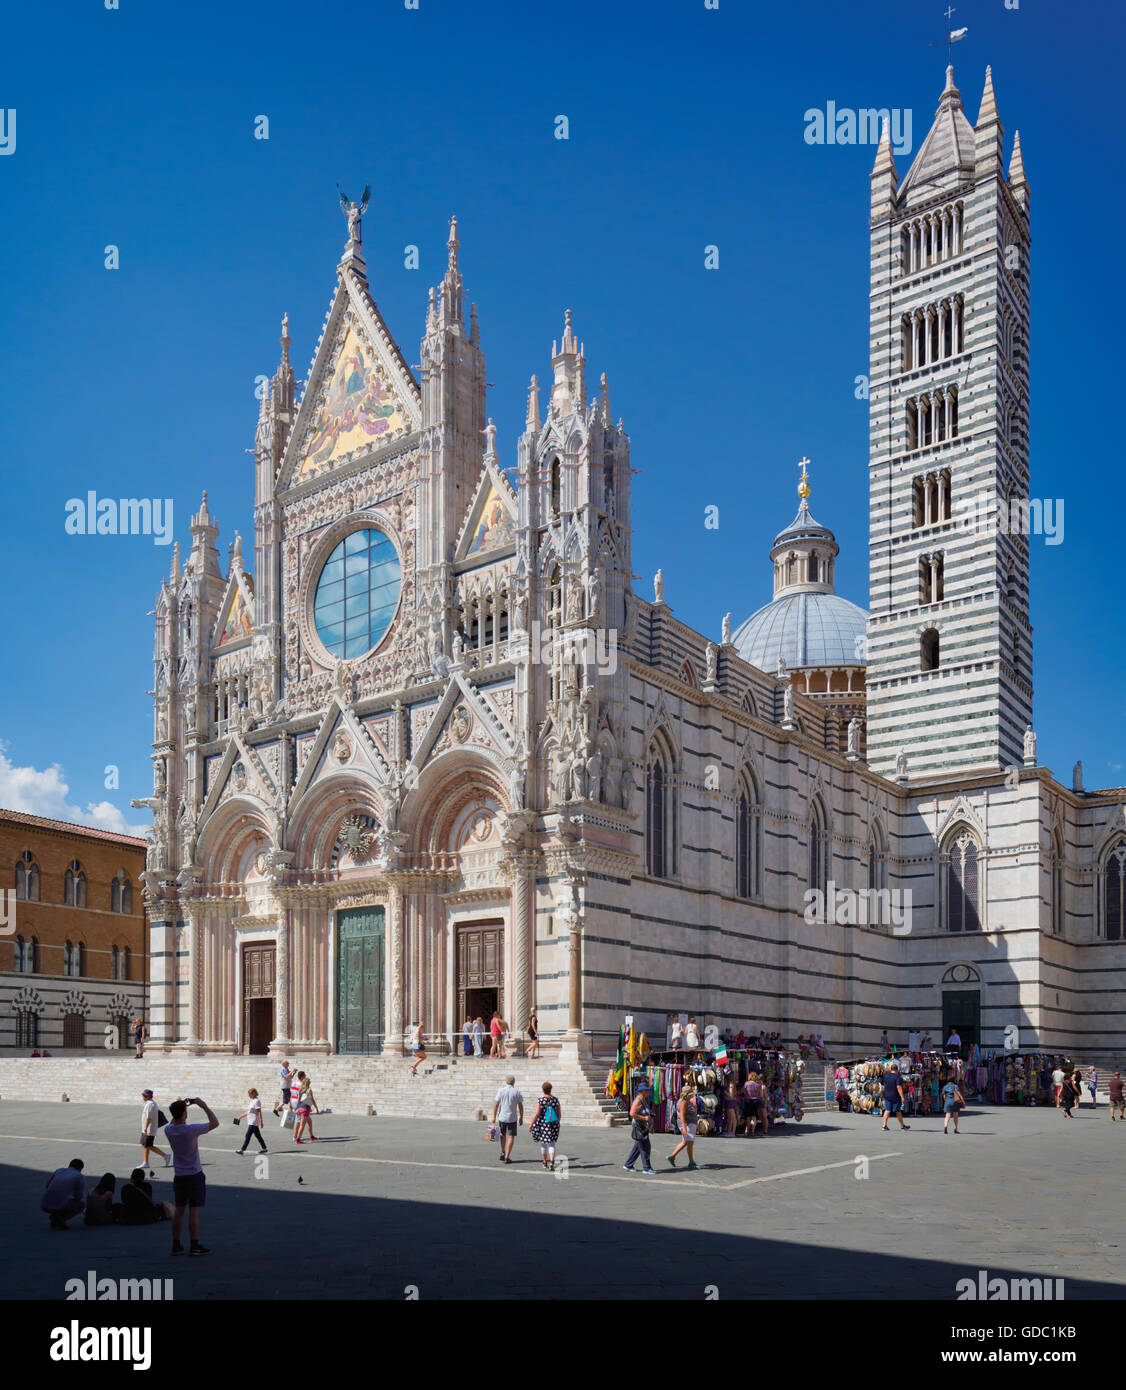 Siena, in provincia di Siena, Toscana, Italia. Il duomo romanico-gotico, o la cattedrale, costruita nel XIII secolo. Foto Stock